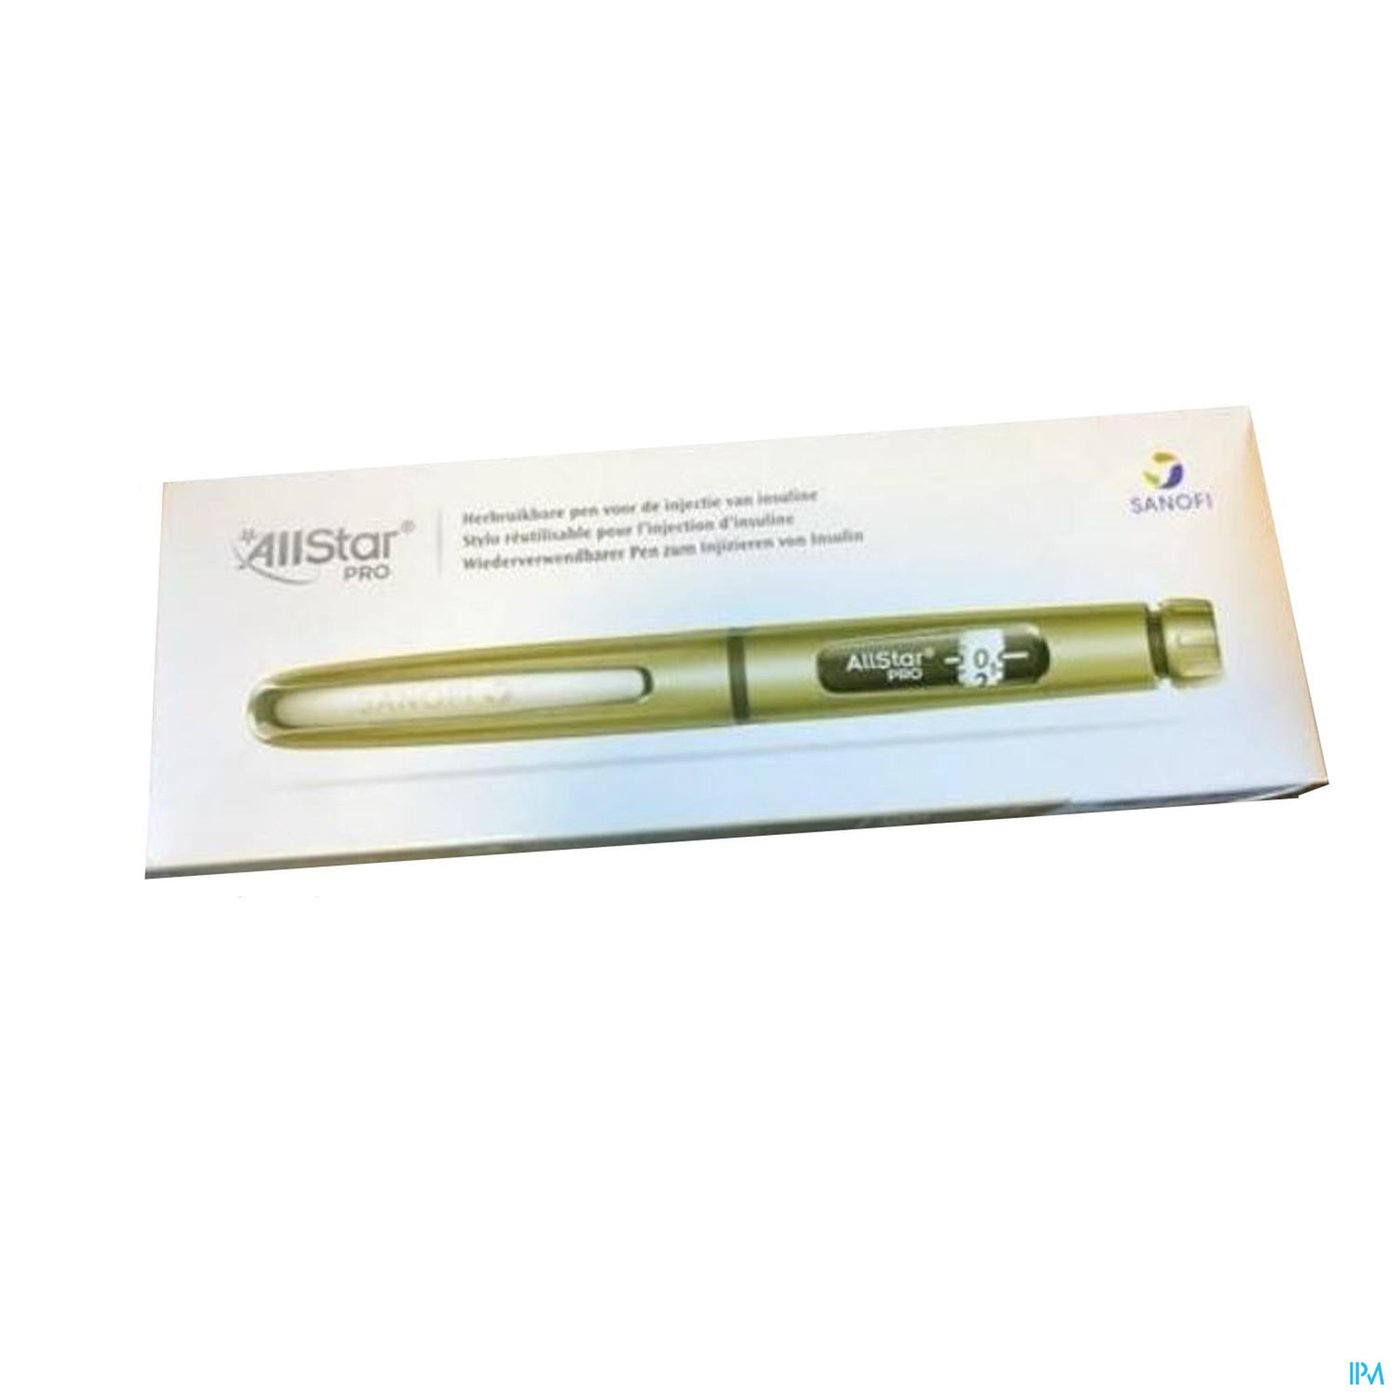 Allstar Pro Injectie Pen Herbruik.insuline Zilver1 packshot